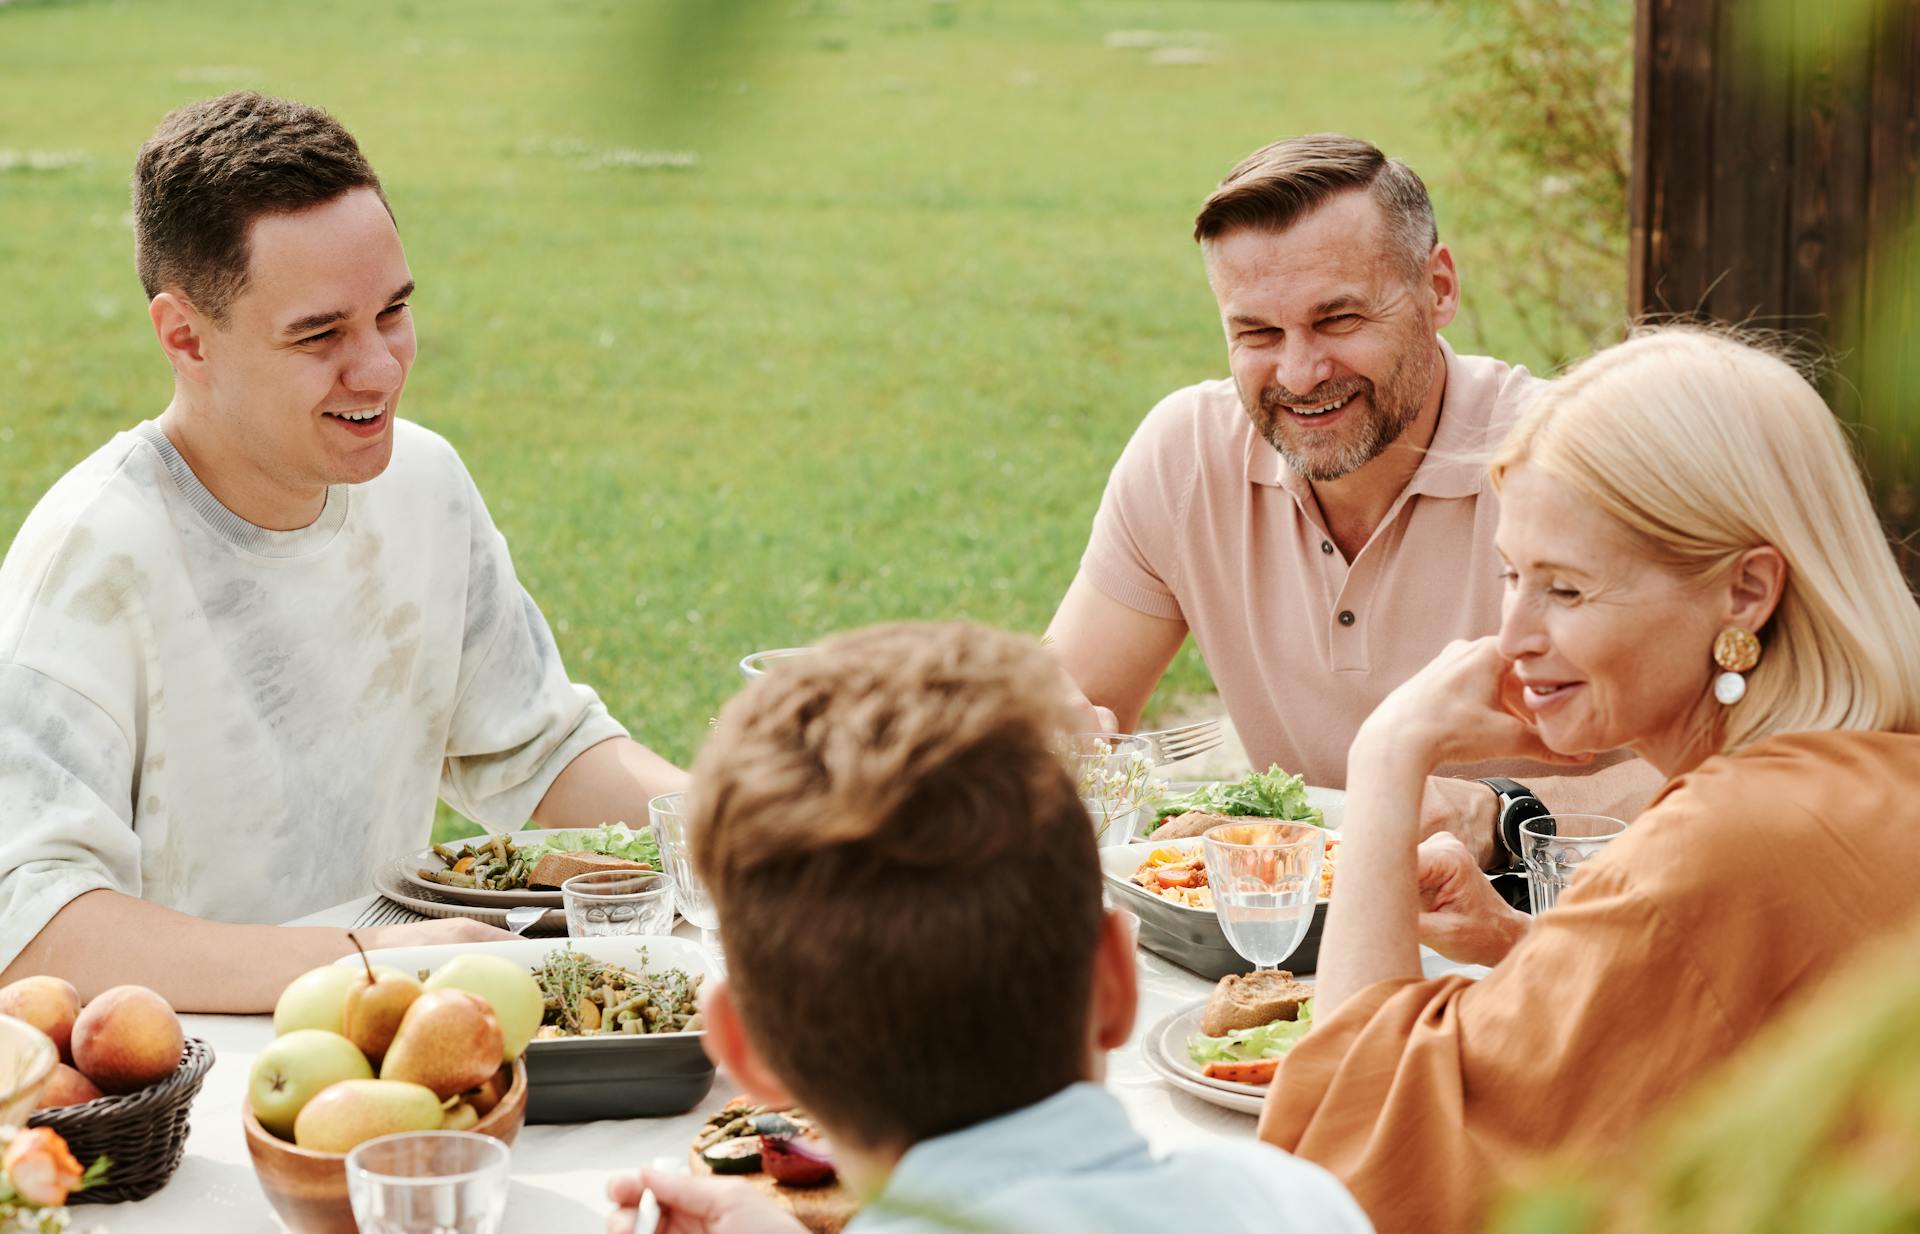 Les membres d'une famille dînent en plein air | Source : Pexels